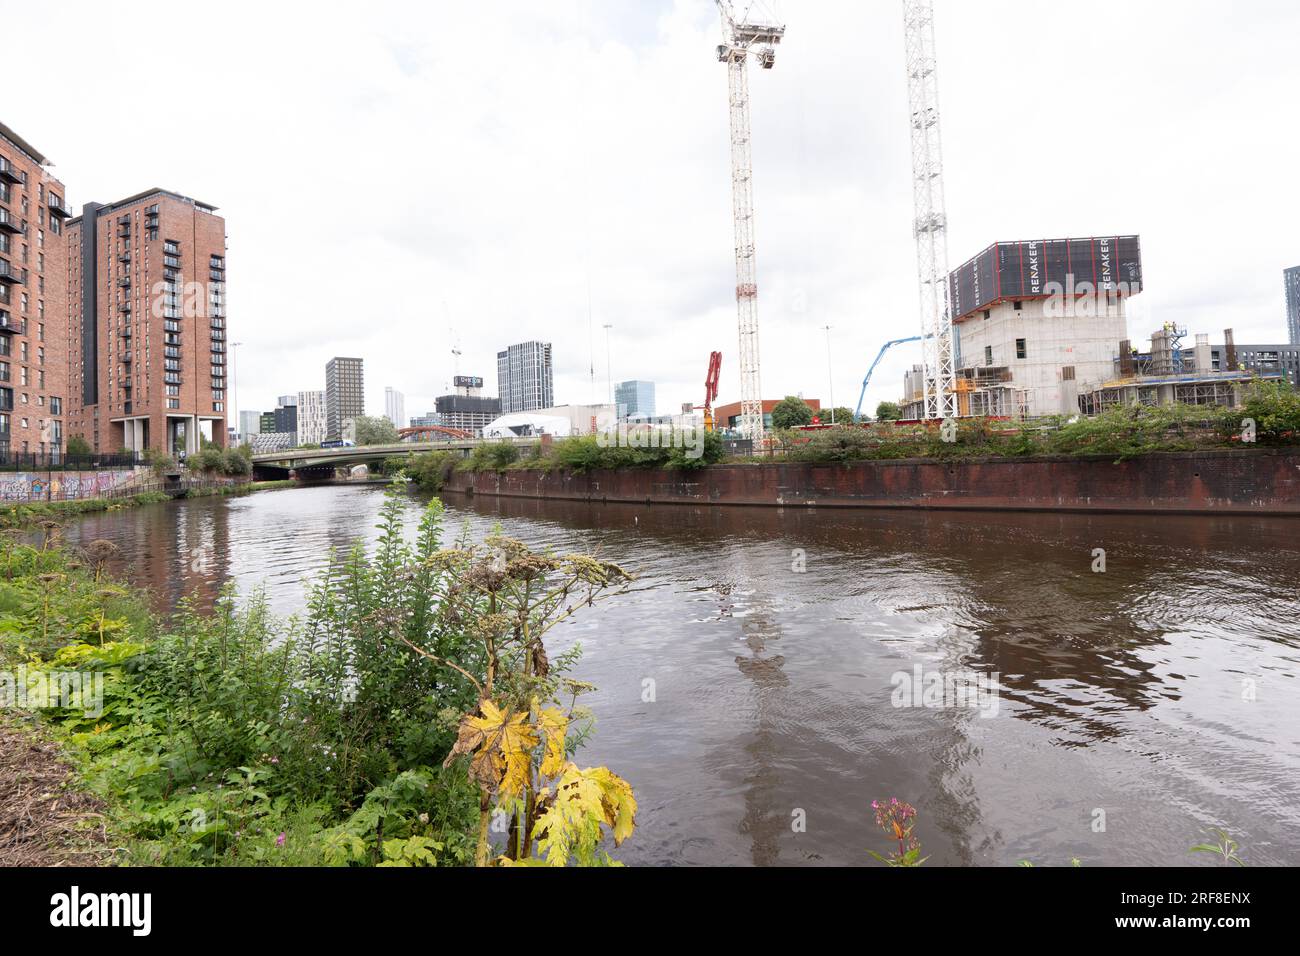 Sviluppo urbano lungo il fiume Irwell, Salford, Borough of Greater Manchester. Il fiume divide Salford e Manchester. Foto Stock